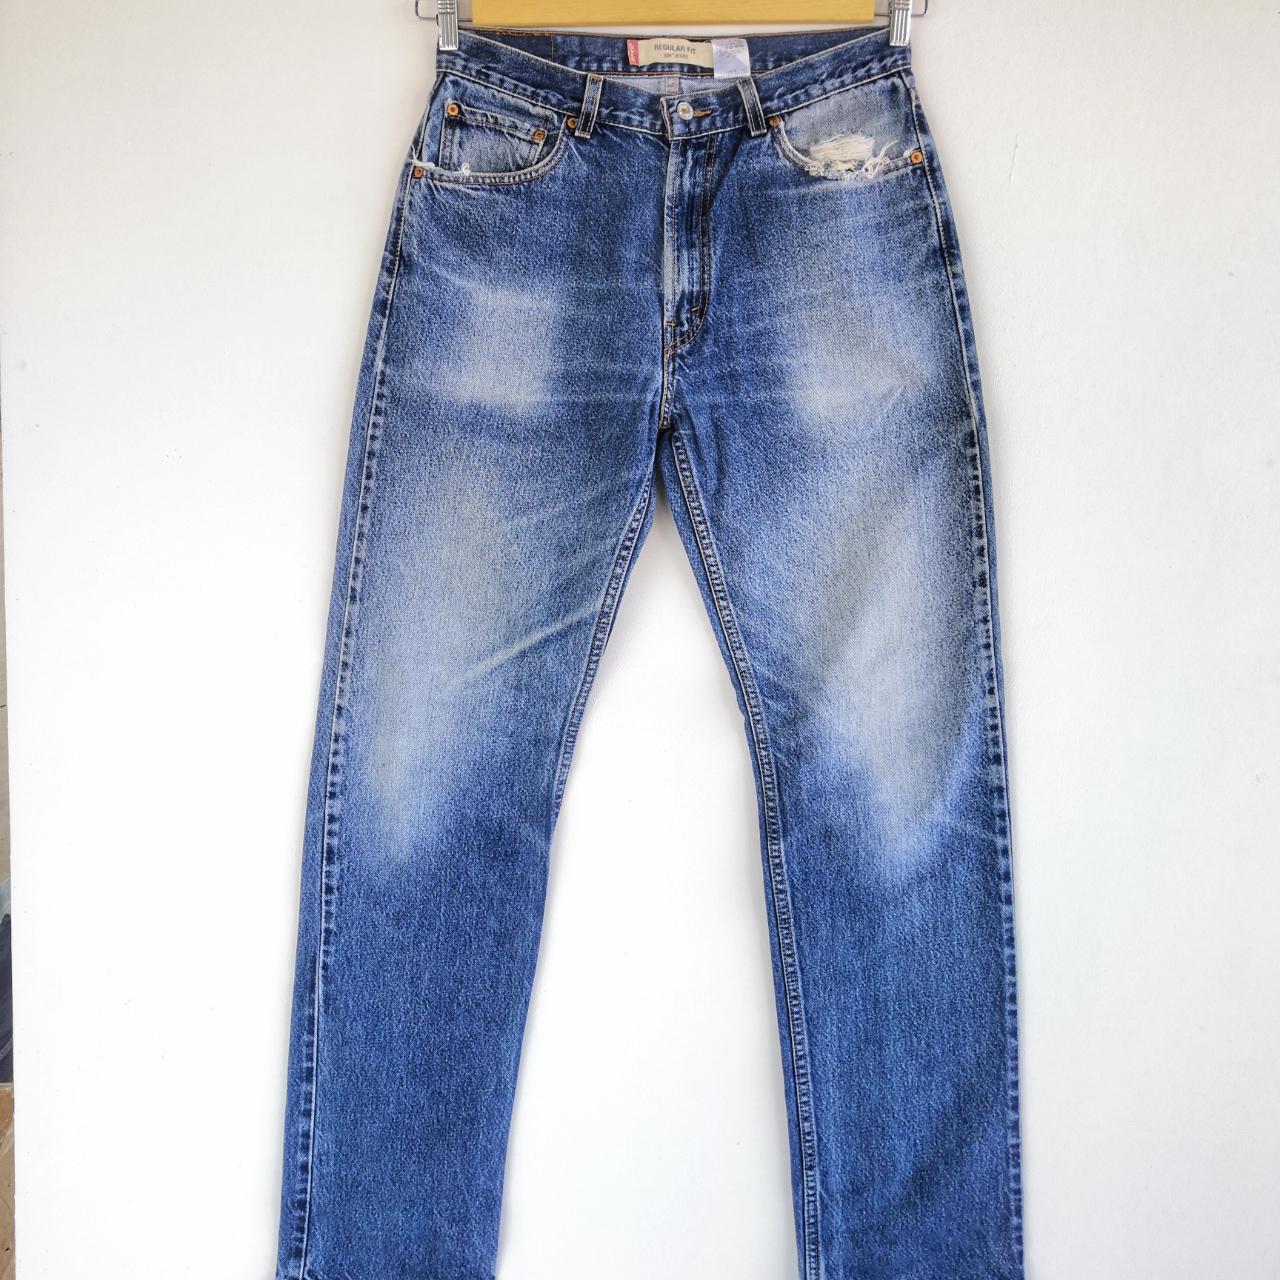 Vintage Levis 505 Jeans Released Hem Levis 505... - Depop